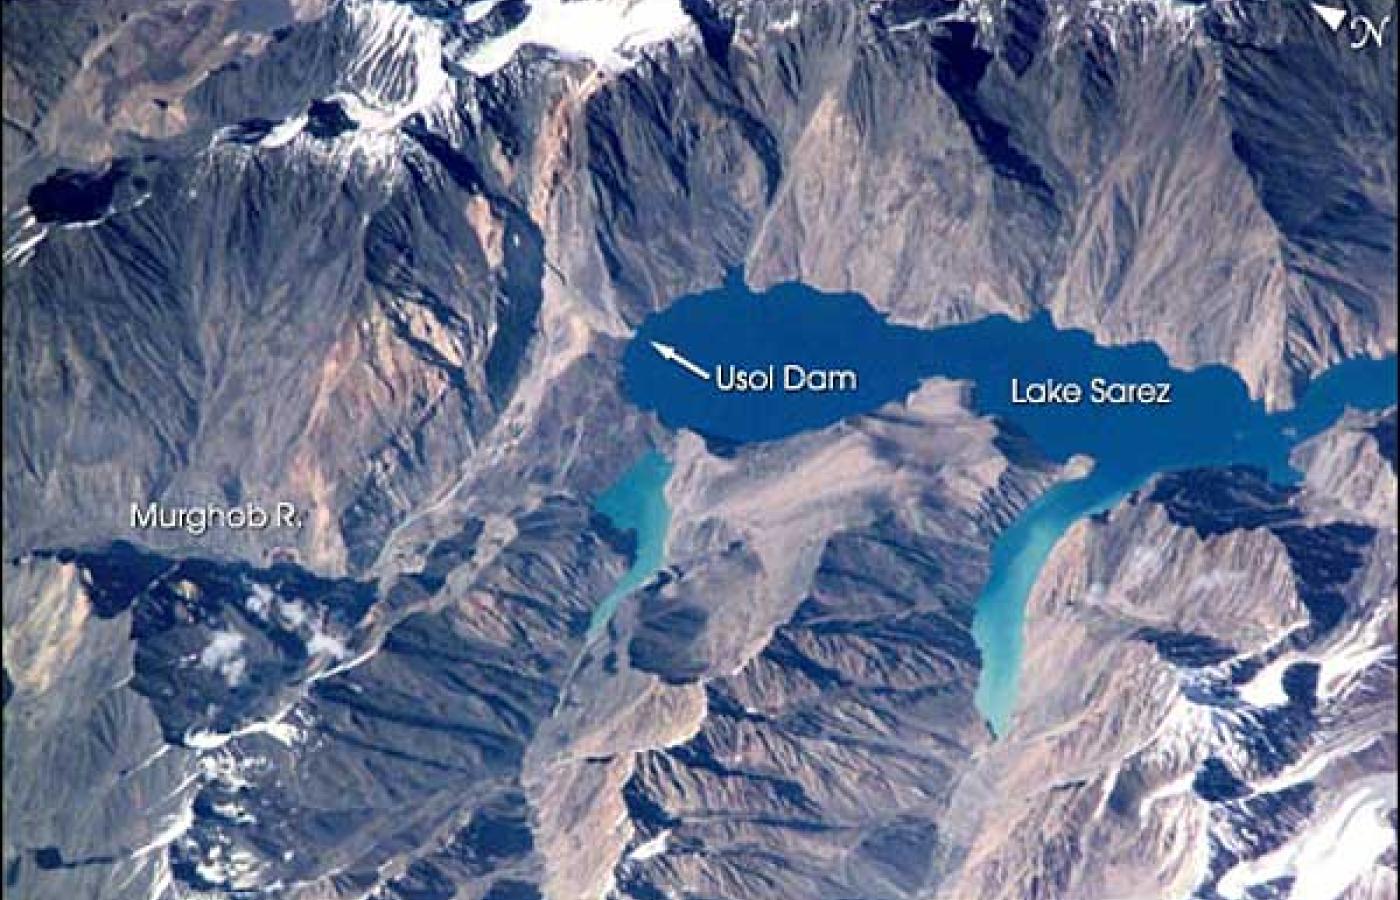 Jezioro Sarez powstało w 1911 roku w wyniku trzęsienia ziemi o sile 9 stopni w skali Richtera. Fot. NASA.